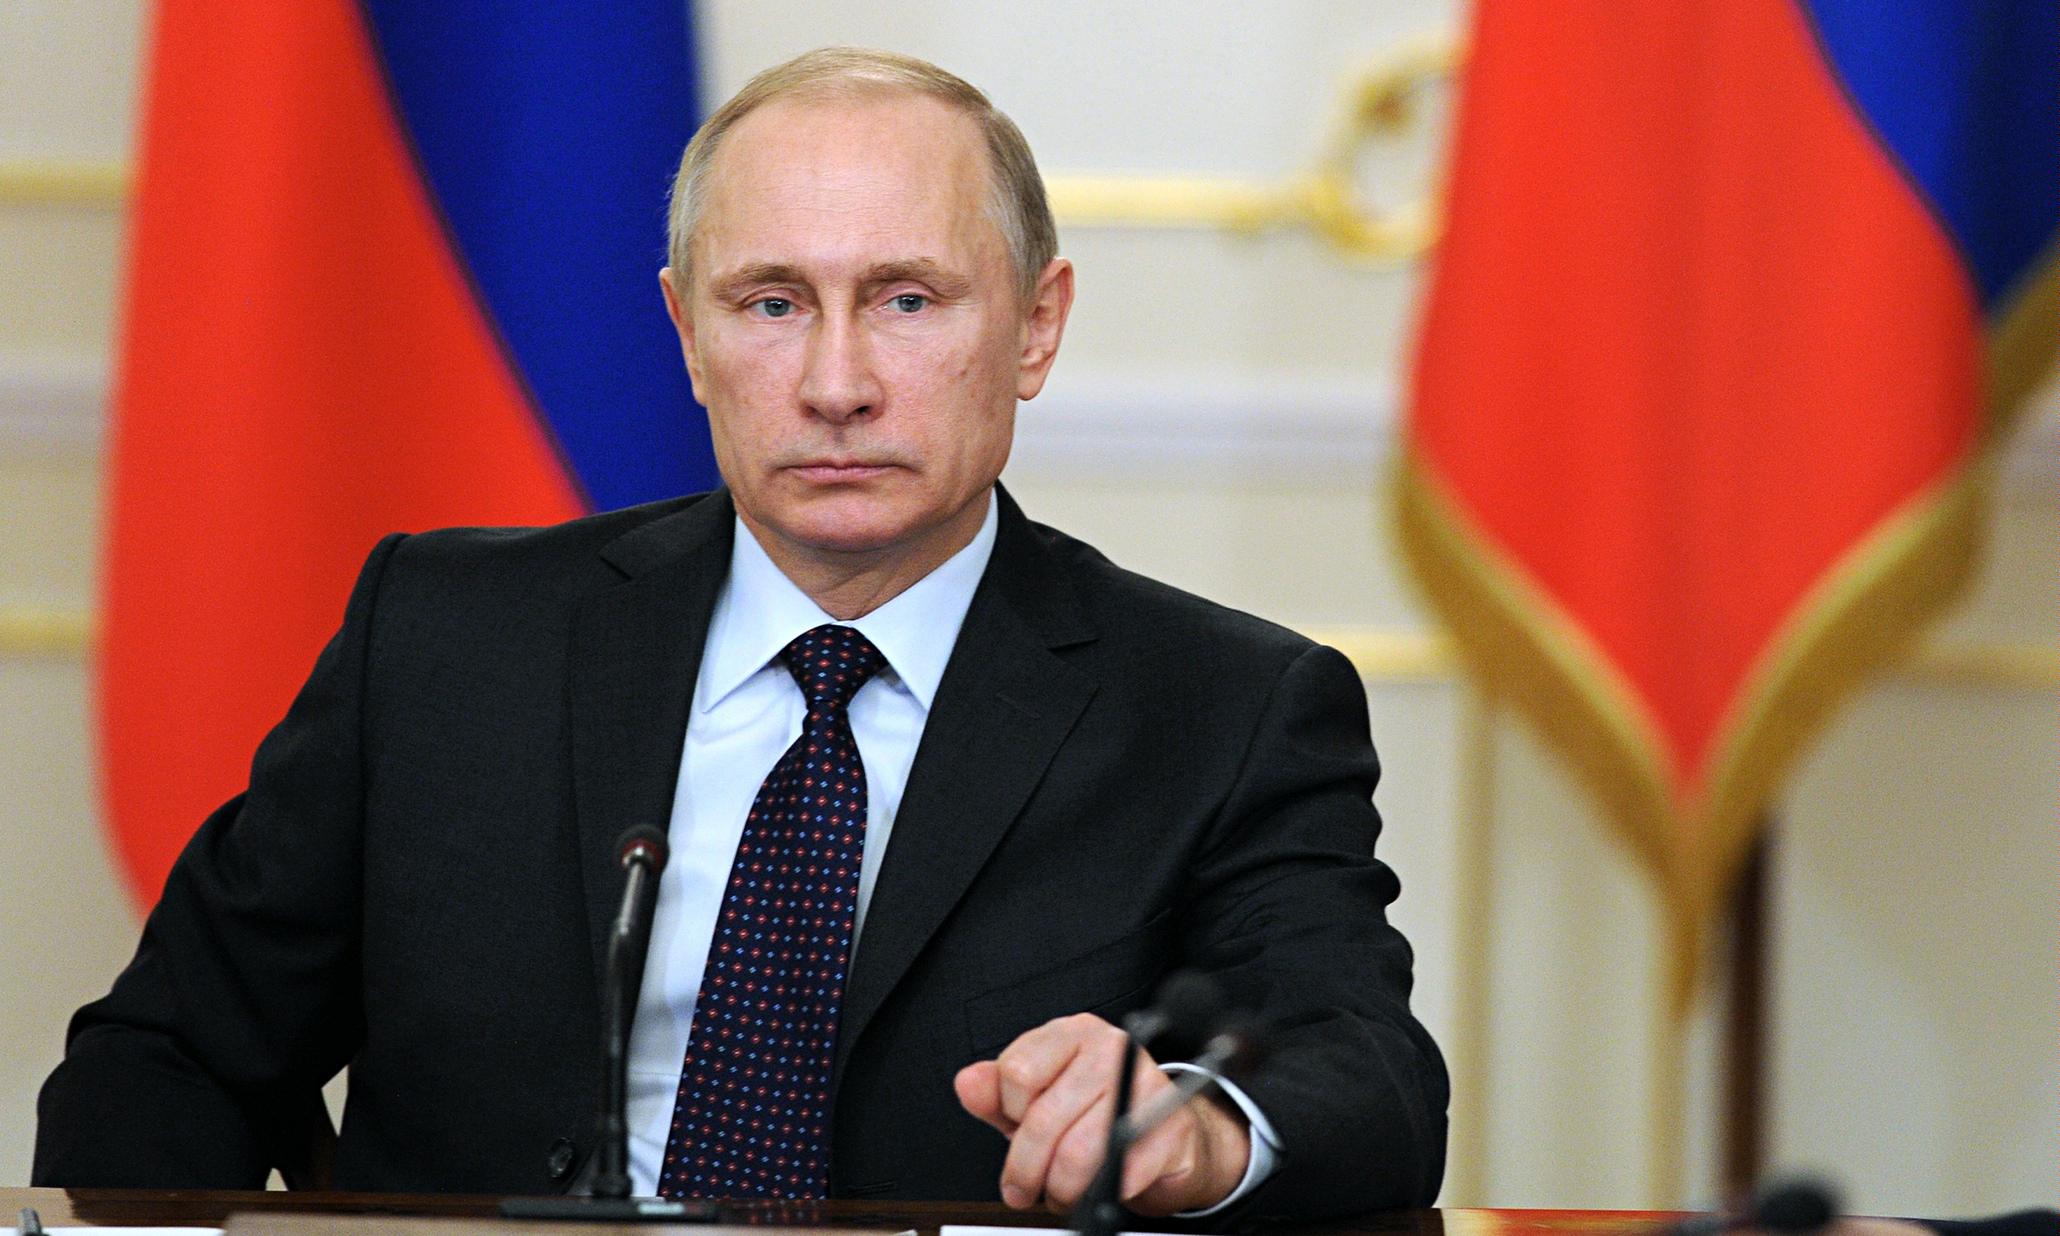 پوتین: آغاز گفتگوهای اطلاعاتی میان روسیه و آمریکا به نفع هردو کشور است